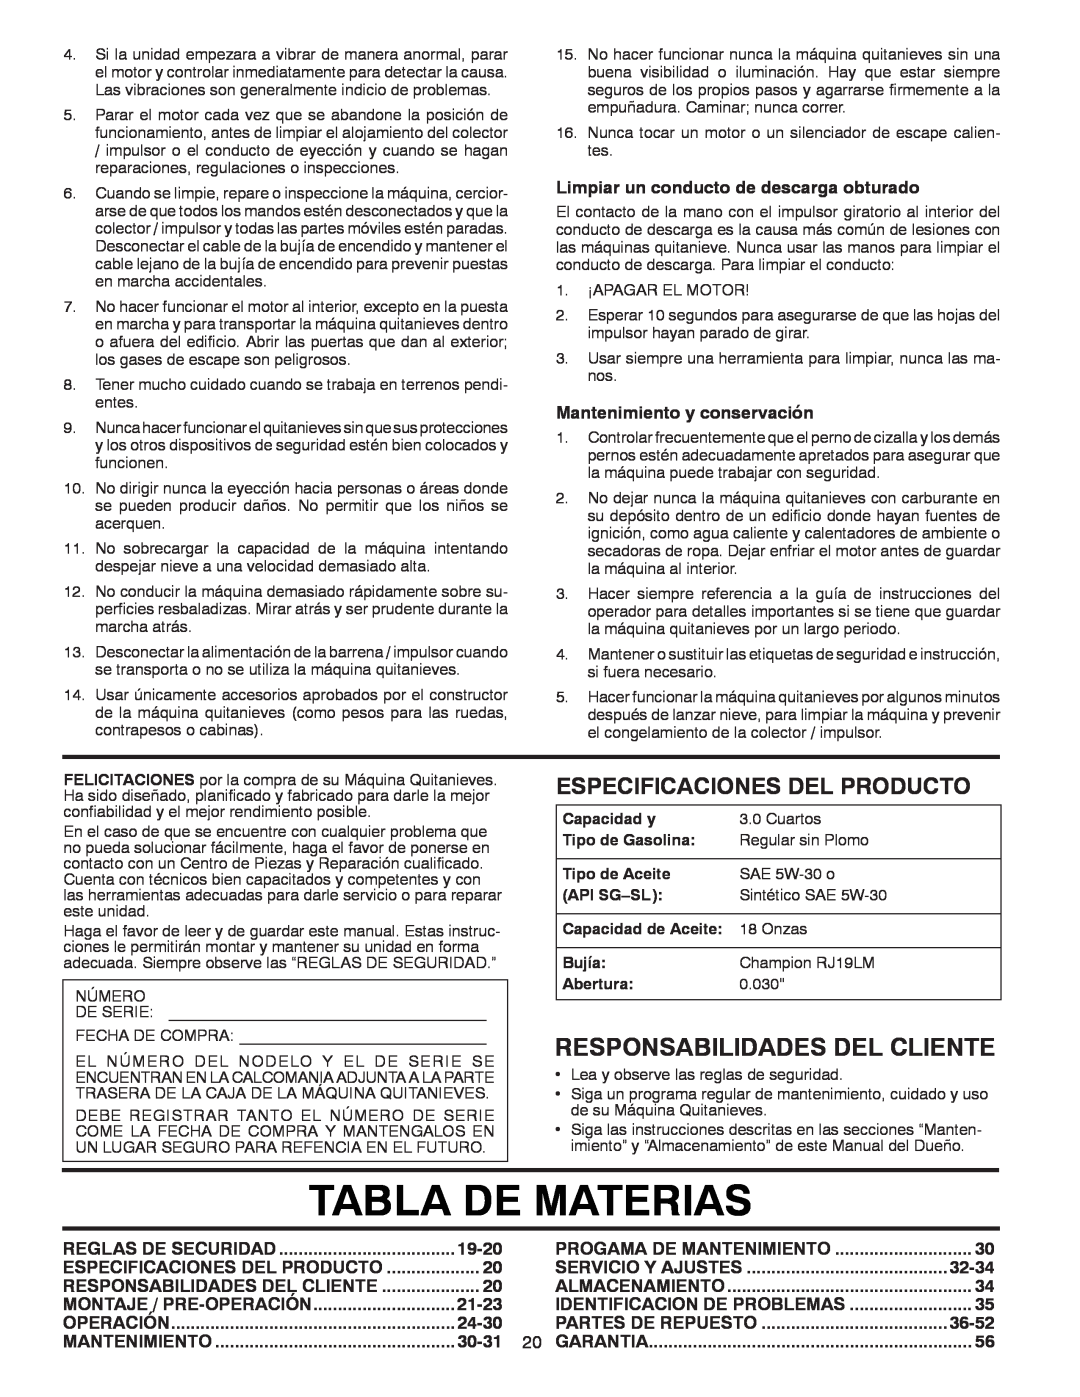 Poulan 96194000504 Tabla De Materias, Responsabilidades Del Cliente, Especificaciones Del Producto, 19-20, 21-23, 24-30 